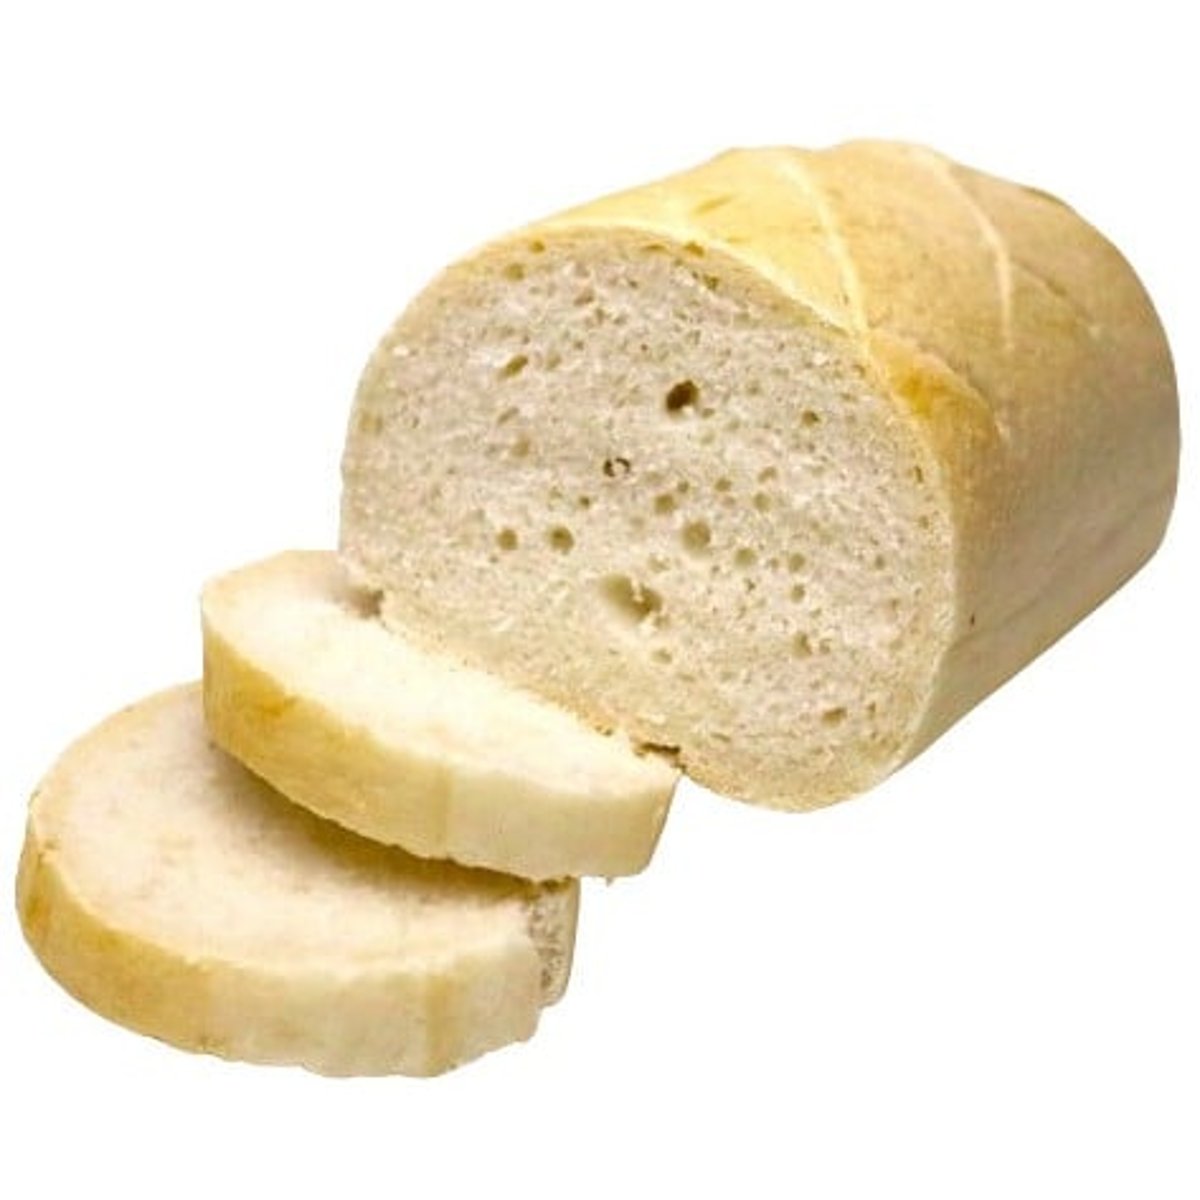 Pekárna Harmonia Nízkobílkovinový bílý chléb bez lepku